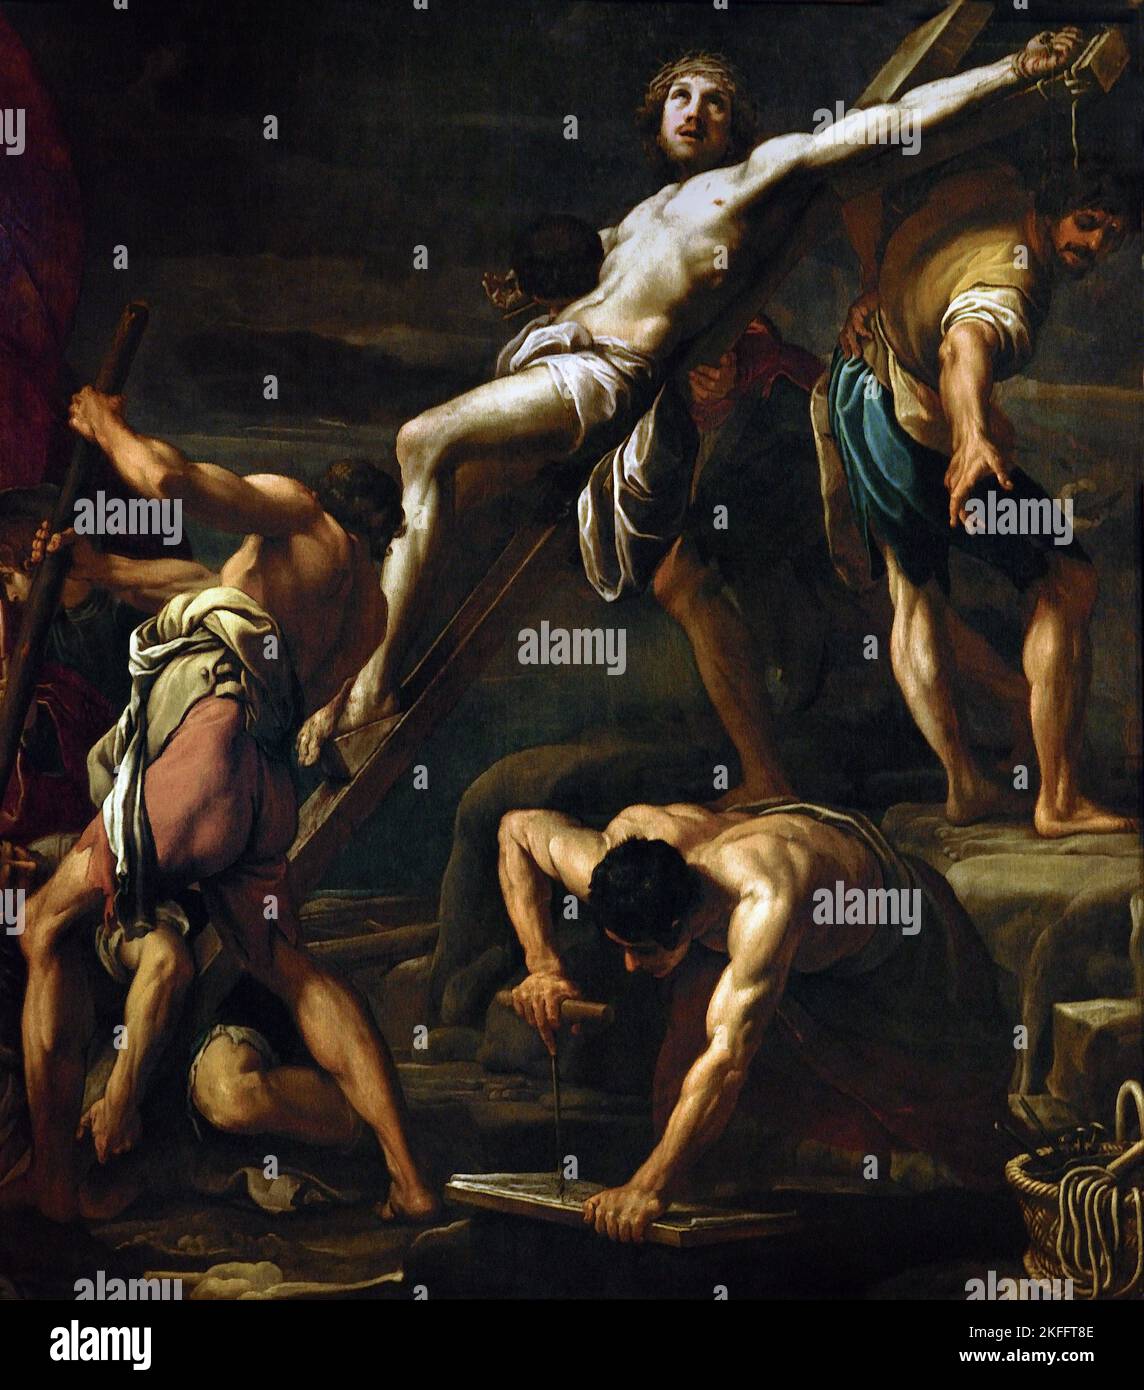 Élévation de la croix, c.1622 , par élévation de la croix, par Tiarini Alessandro 1577 - 1668 16/17th siècle Italie, Italien. Taly, Italien. Banque D'Images